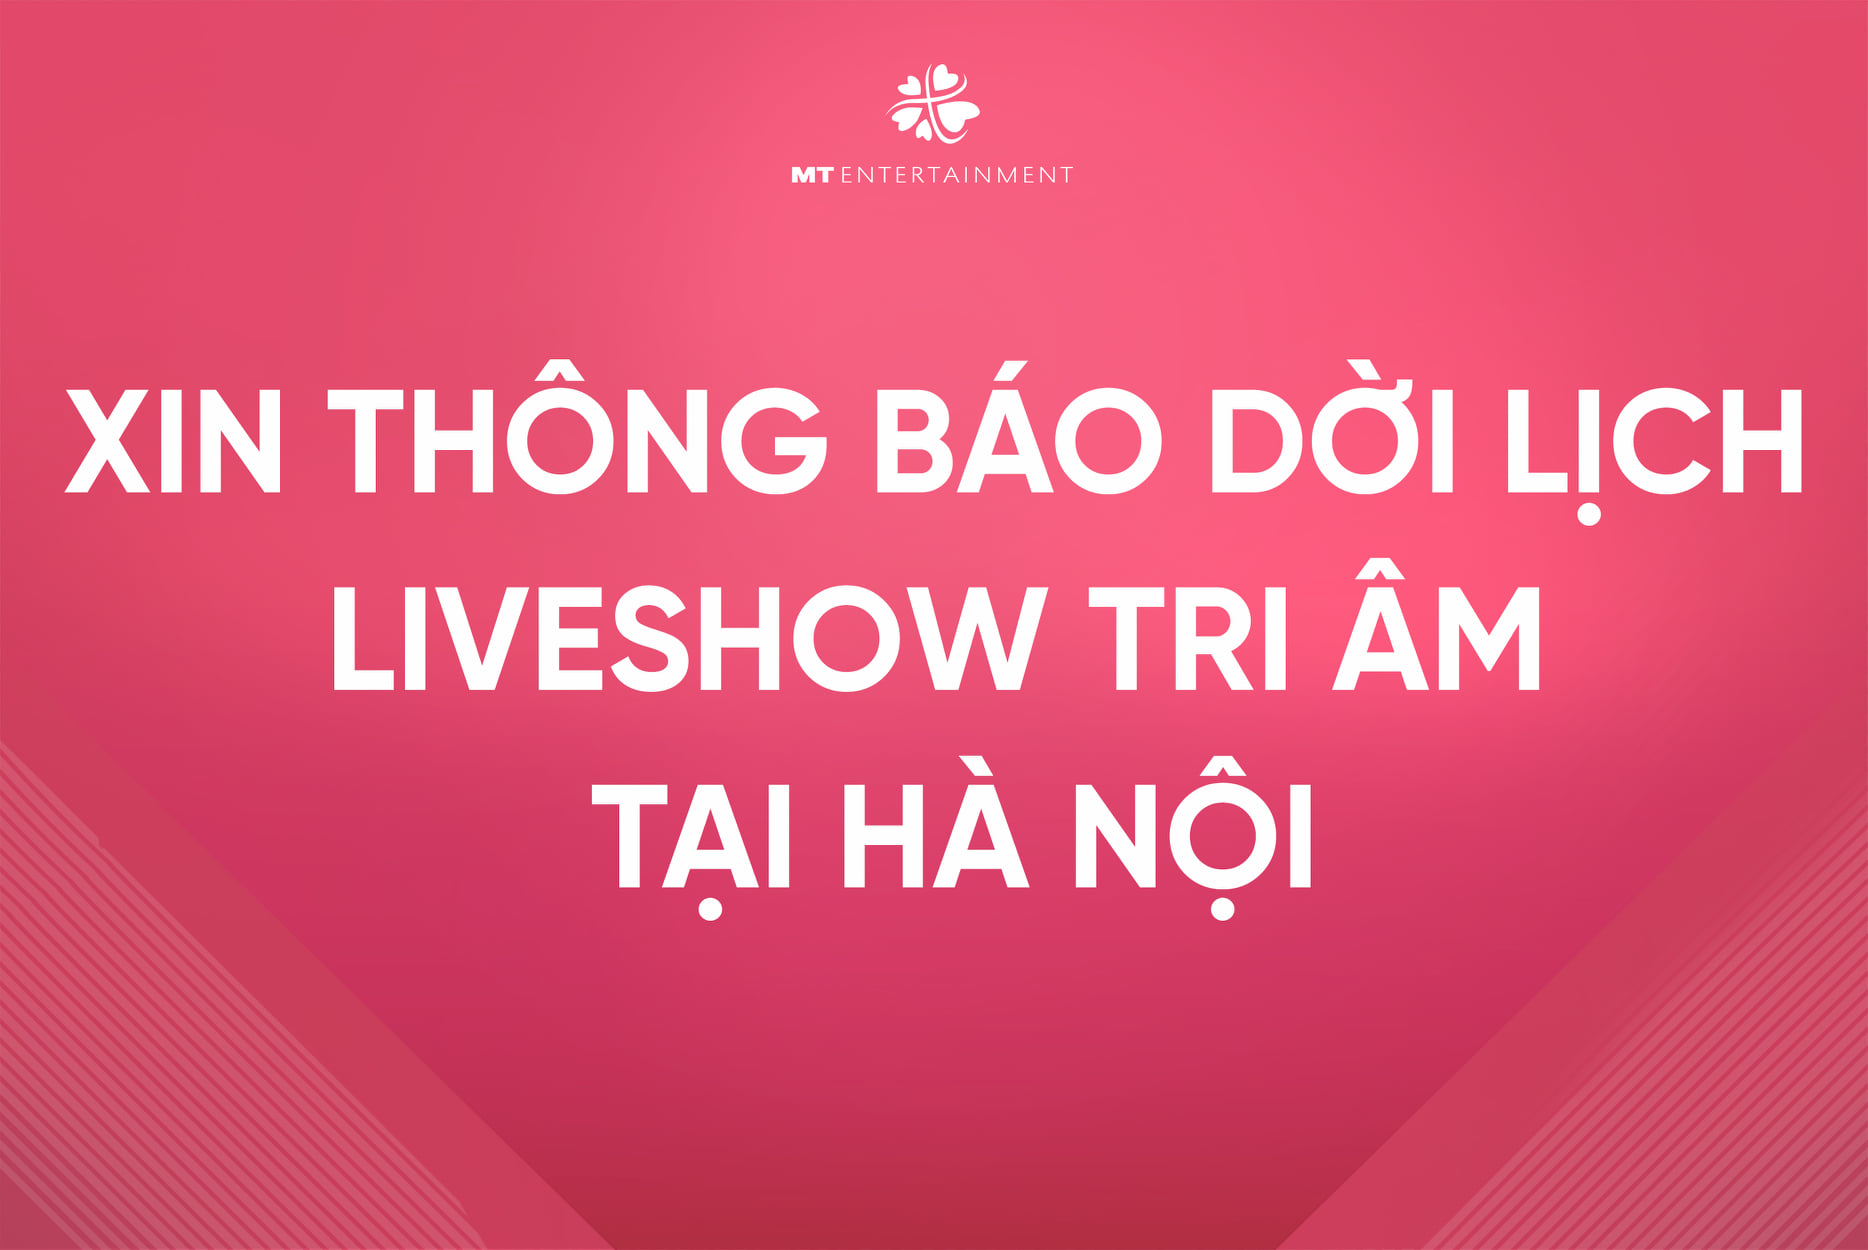 Mỹ Tâm chính thức thông báo dời lịch liveshow 'Tri Âm' tại Hà Nội vì dịch bệnh phức tạp - ảnh 1